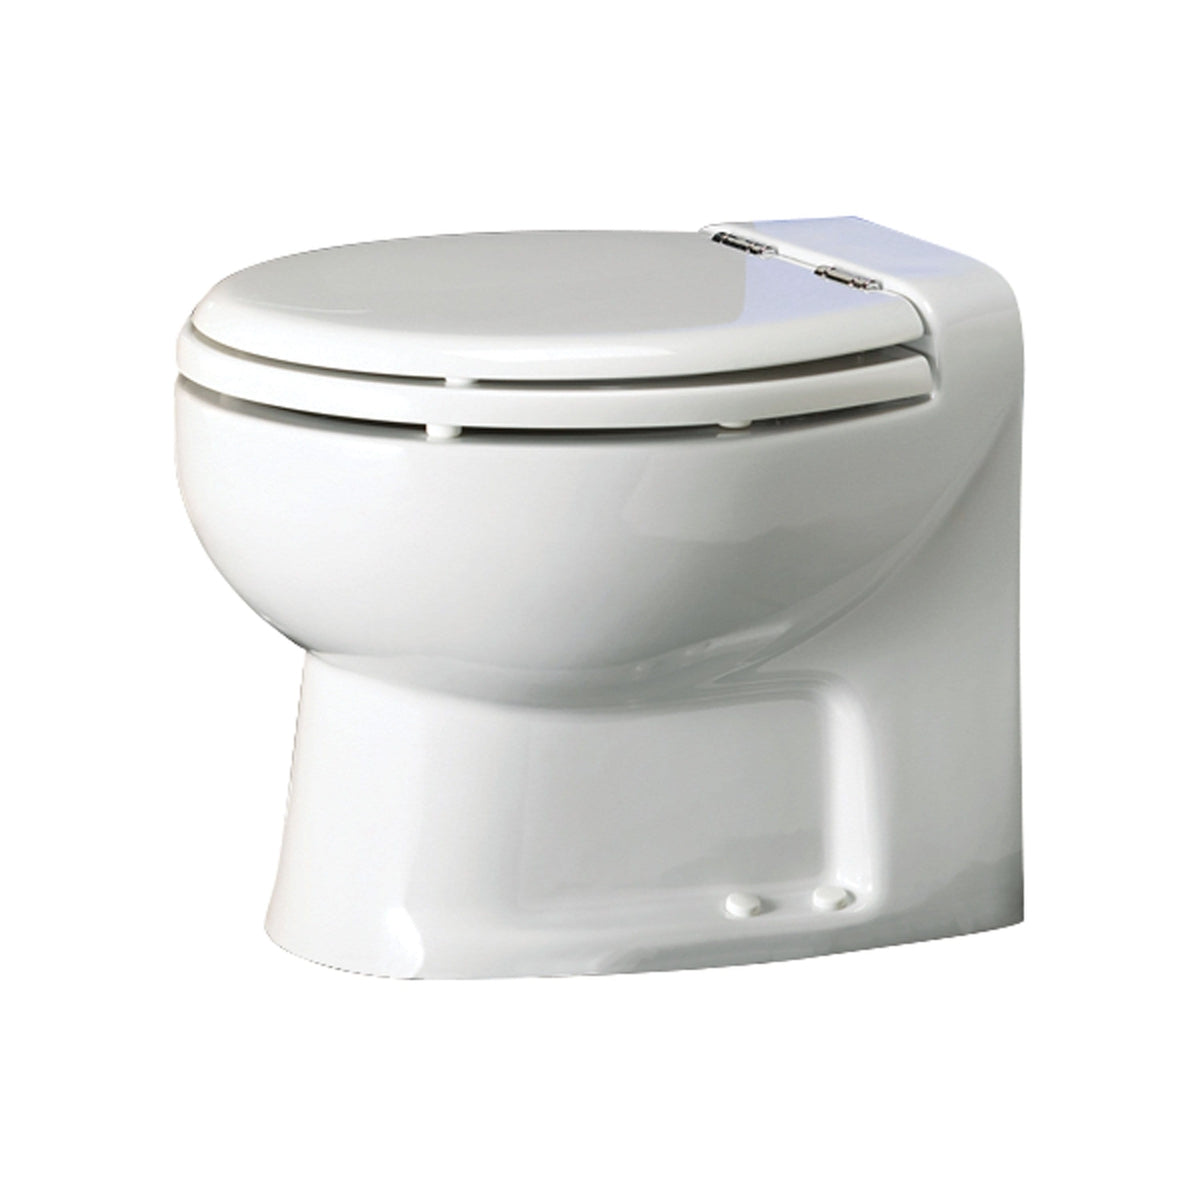 Thetford Not Qualified for Free Shipping Thetford Tecma Silence Plus 1 Mode 24v RV Toilet White #38361